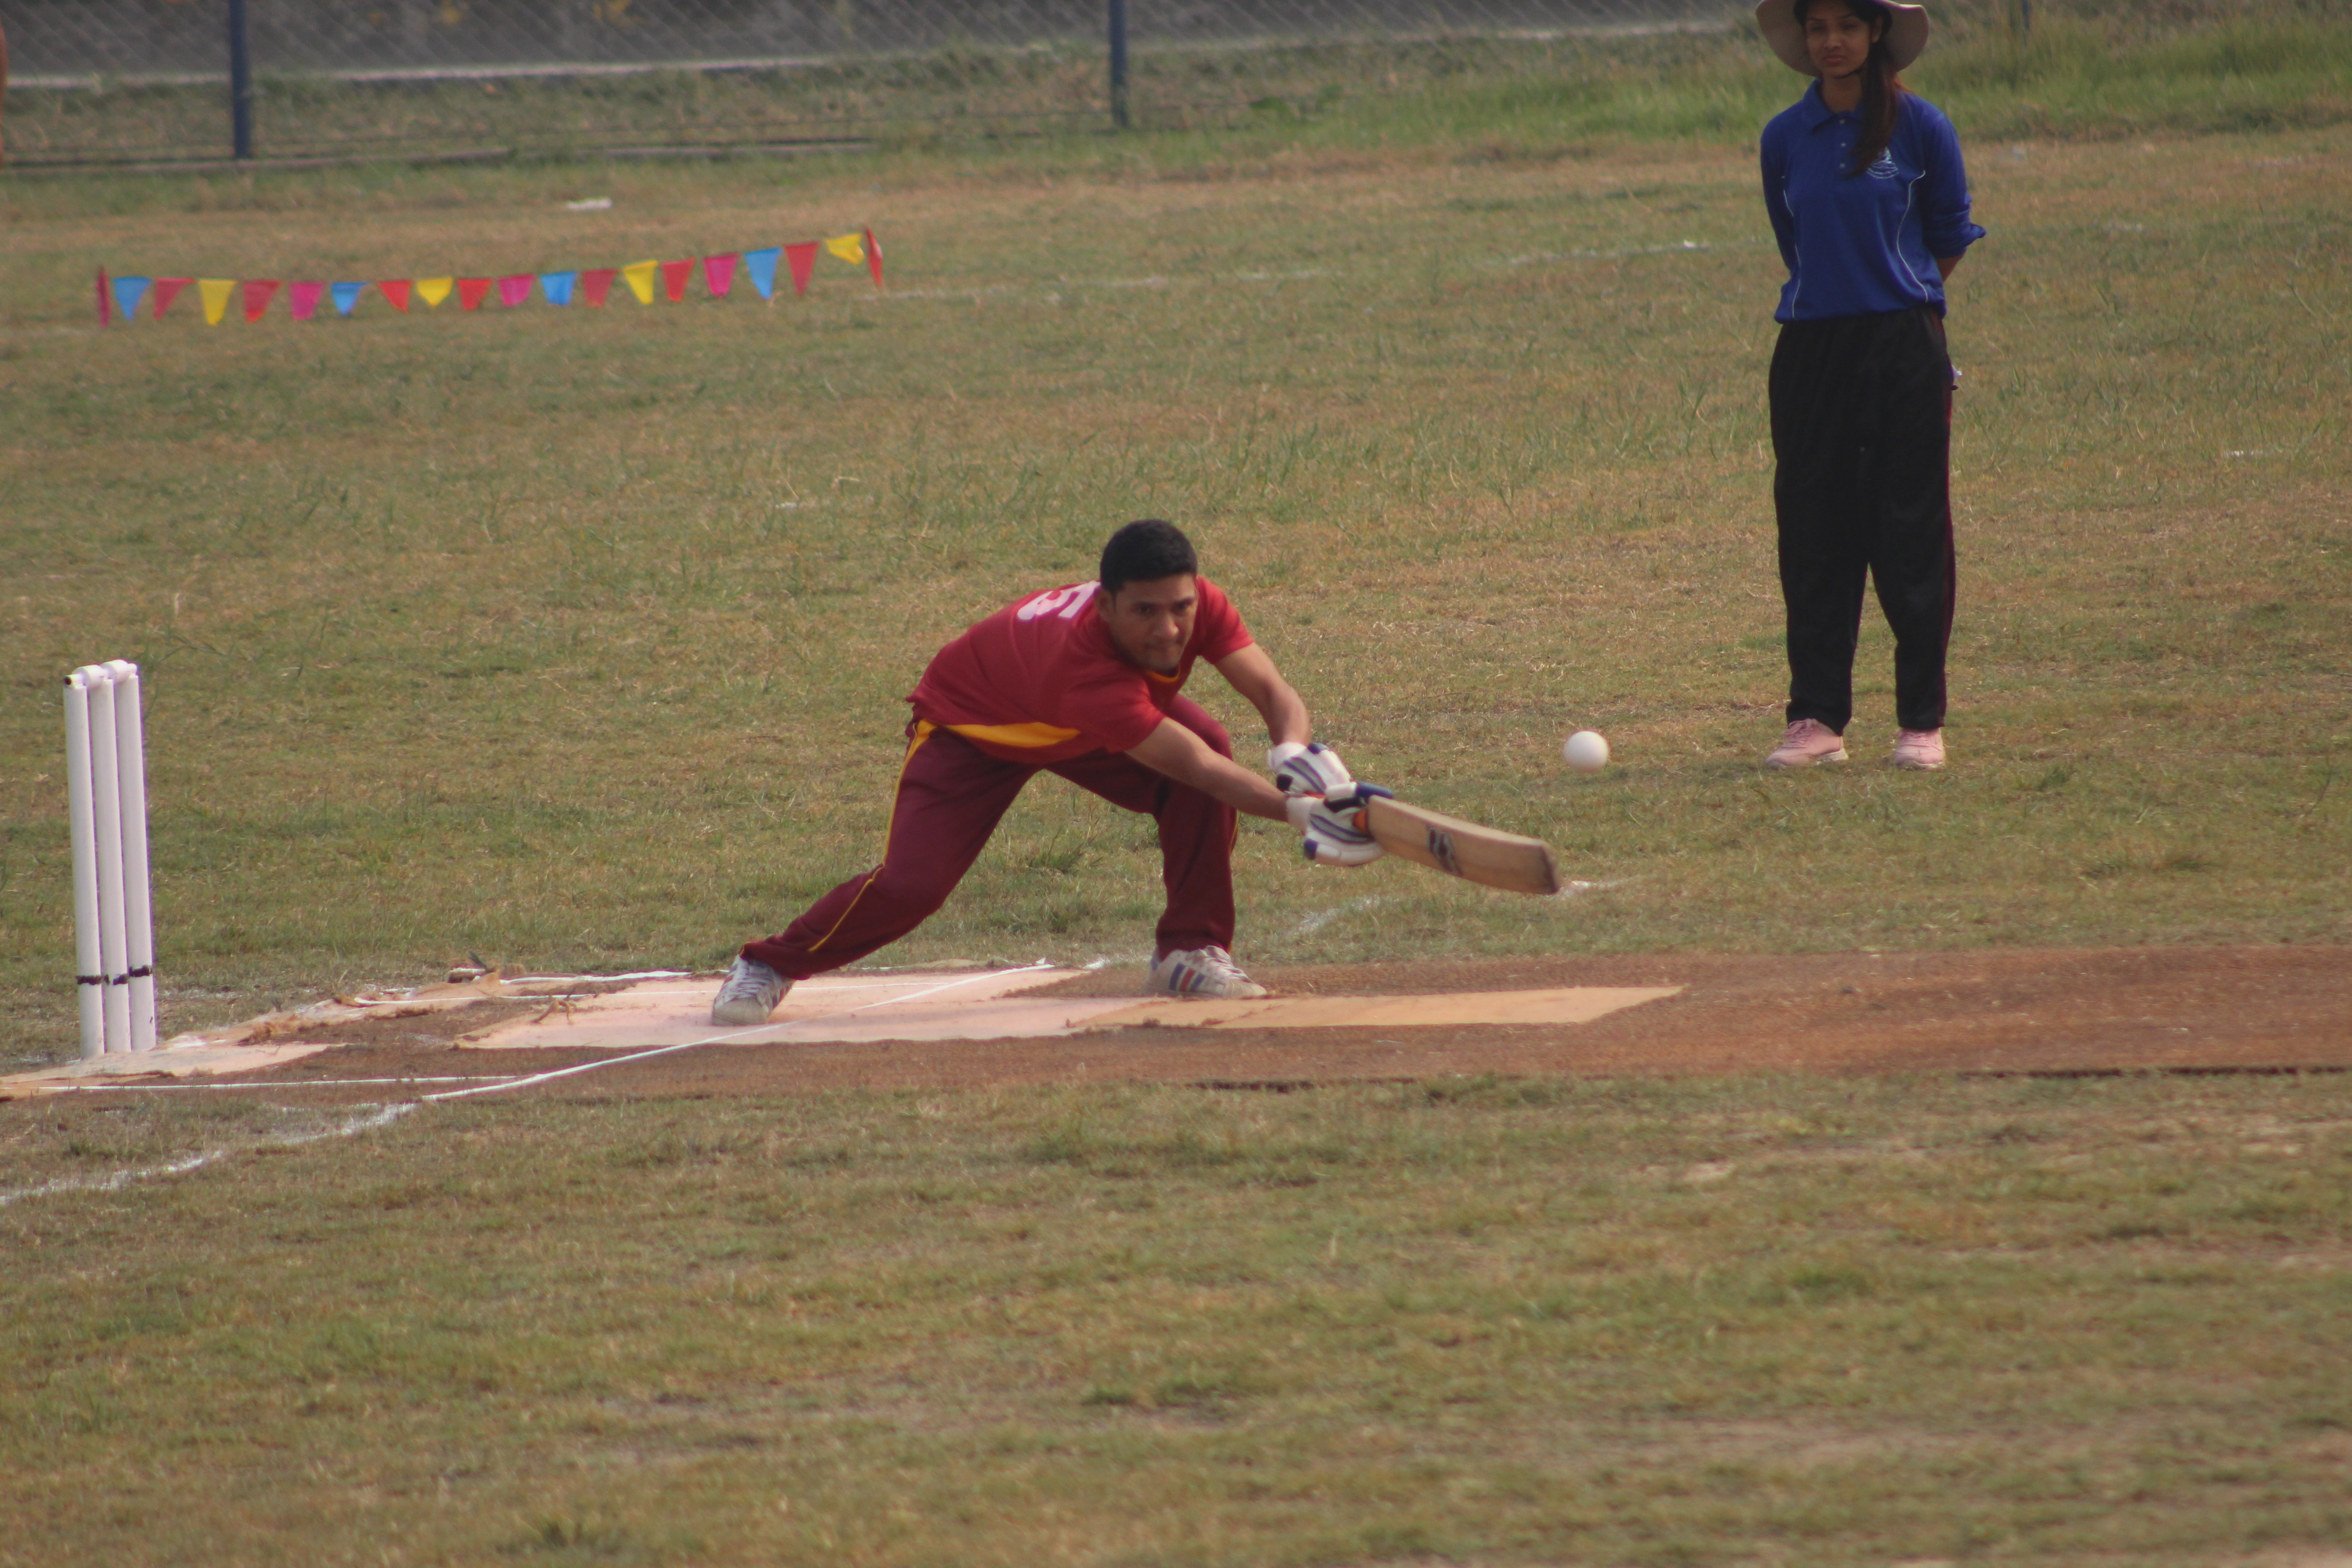 प्रथम रोनाल्ड म्याकुली कप दृष्टिविहीन क्रिकेट प्रतियोगितामा त्रिभुवन आर्मी र बर्दिया विजयी